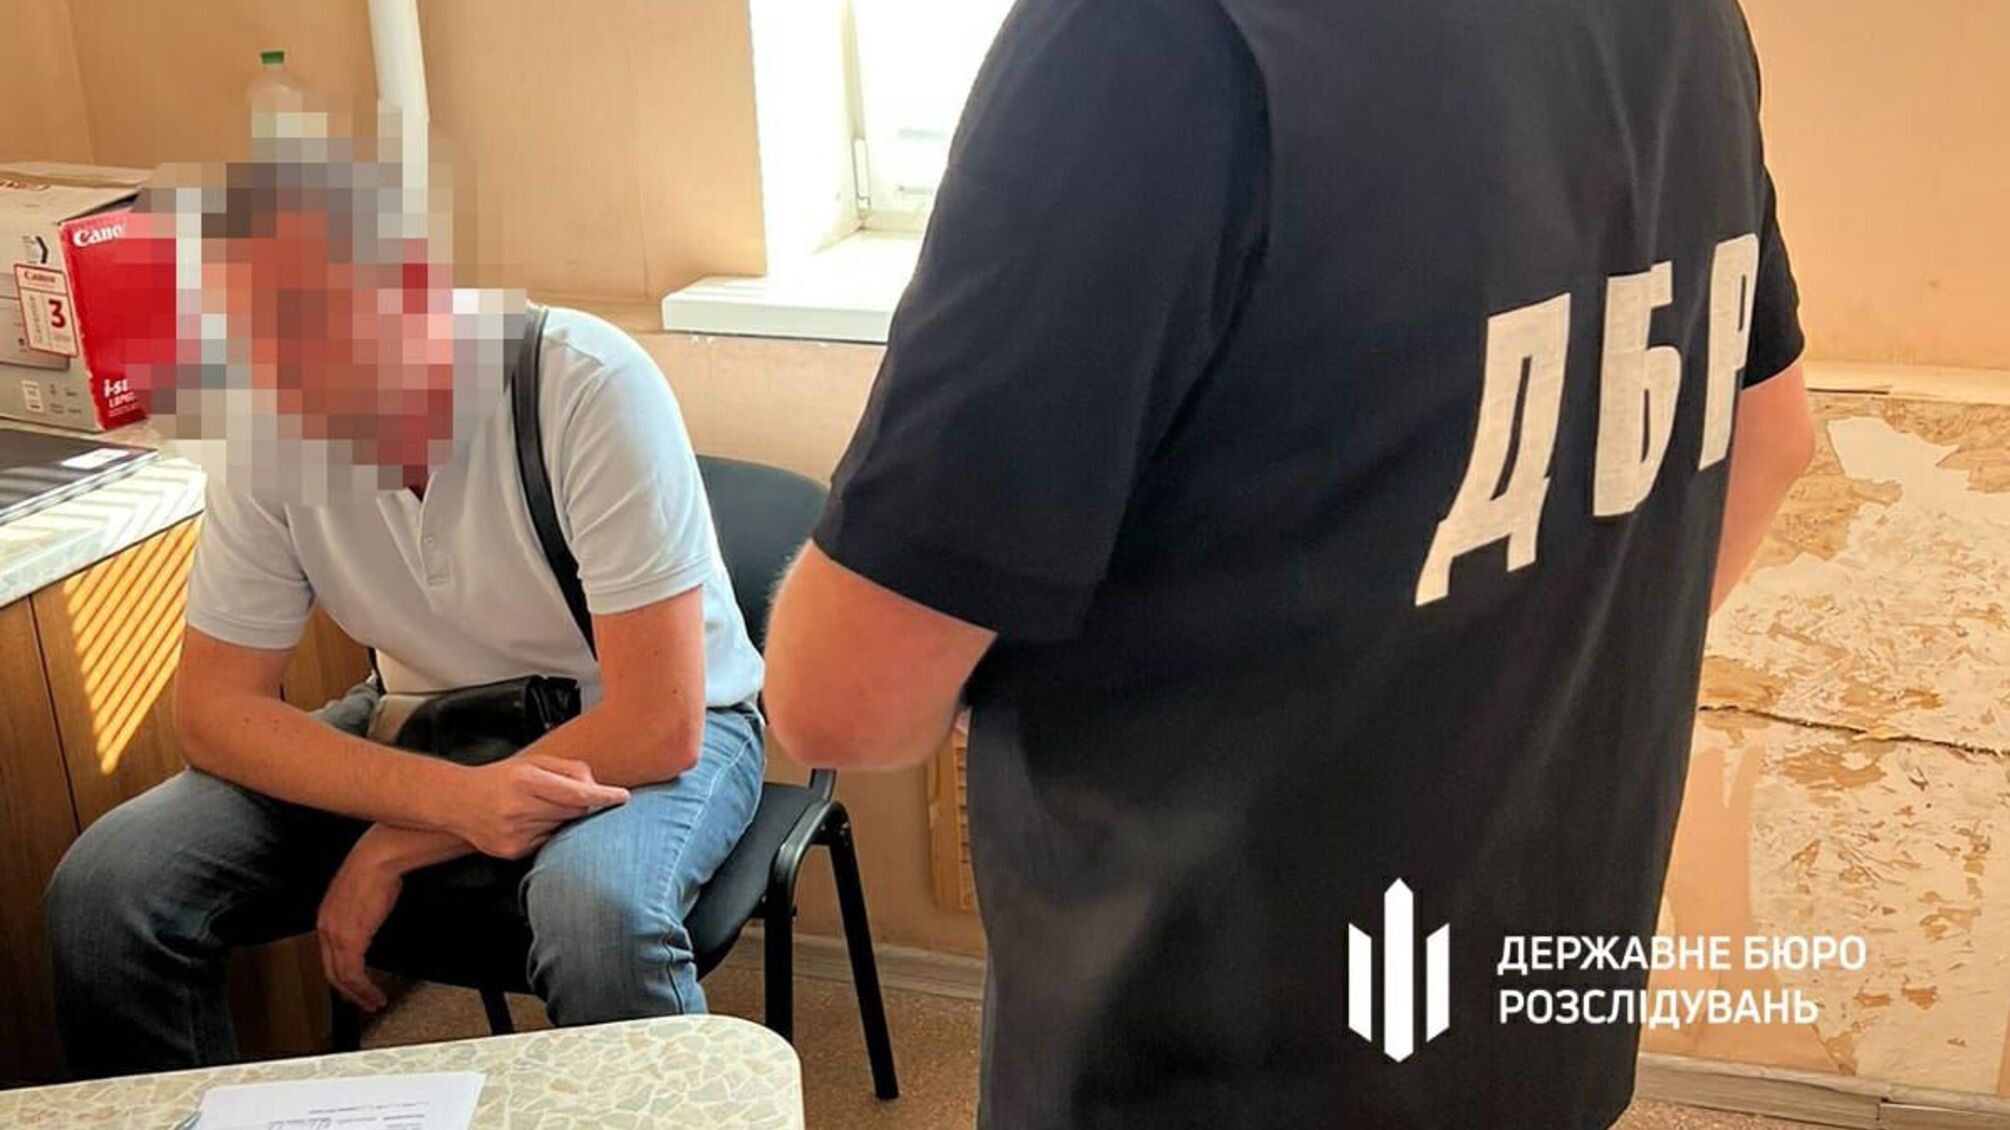 Полицейский, продававший личные данные украинцев предстанет перед судом, - ДБР